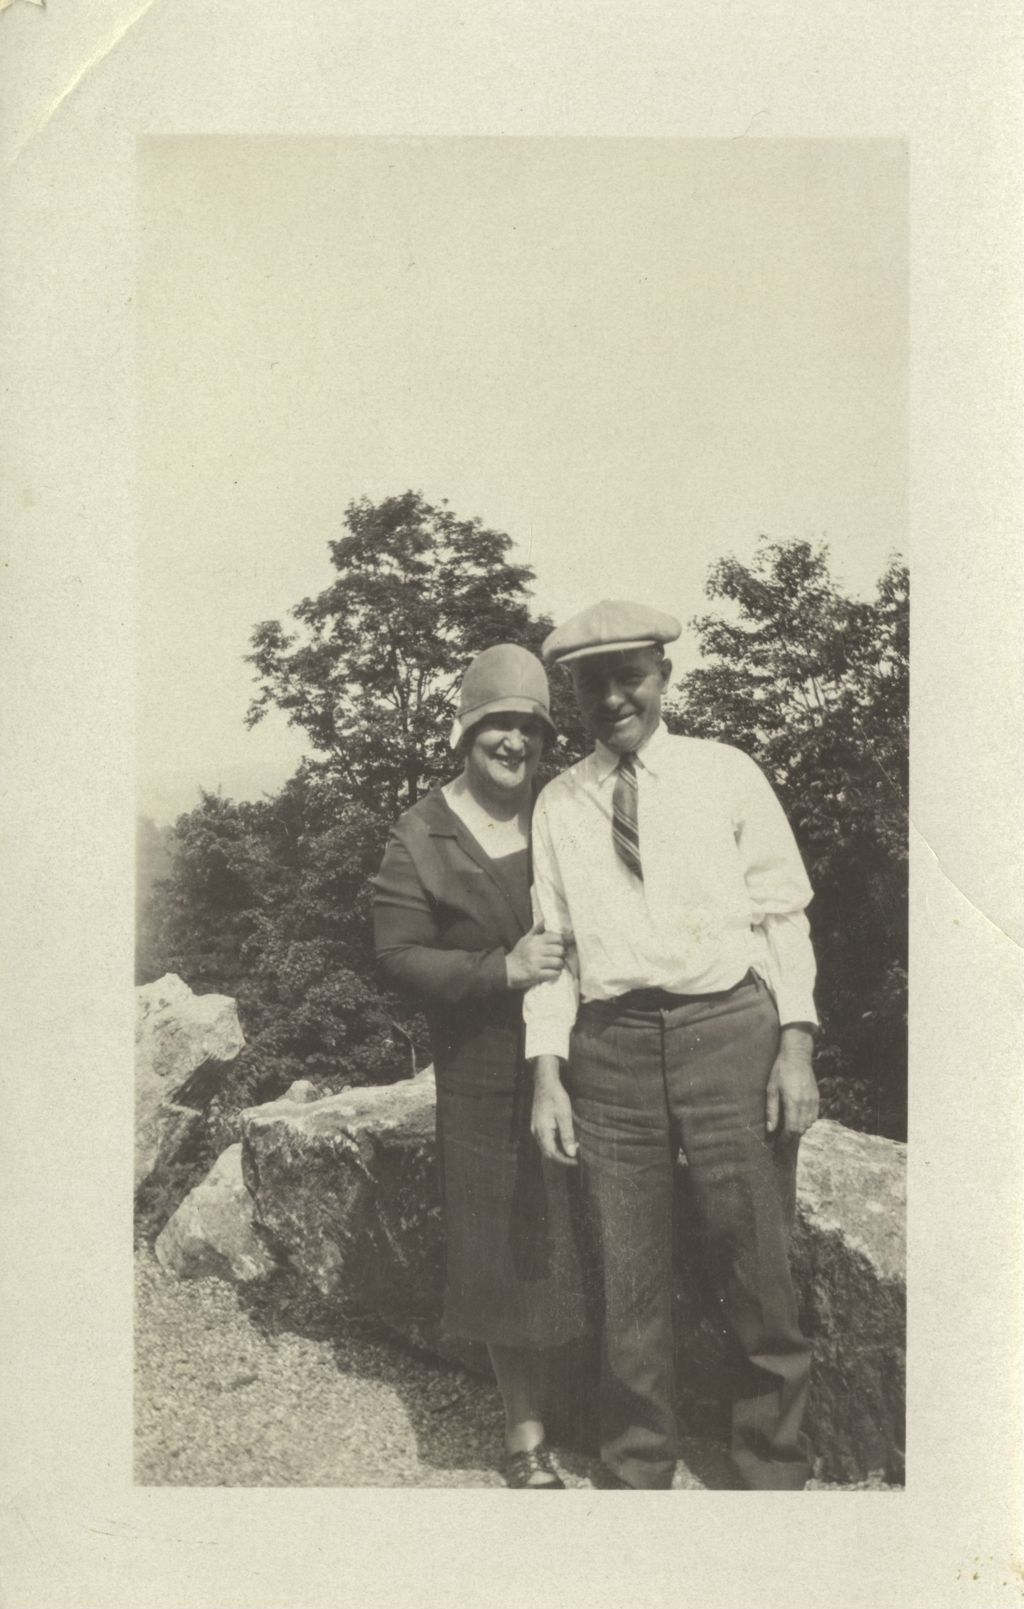 Miniature of Richard J. Daley's parents